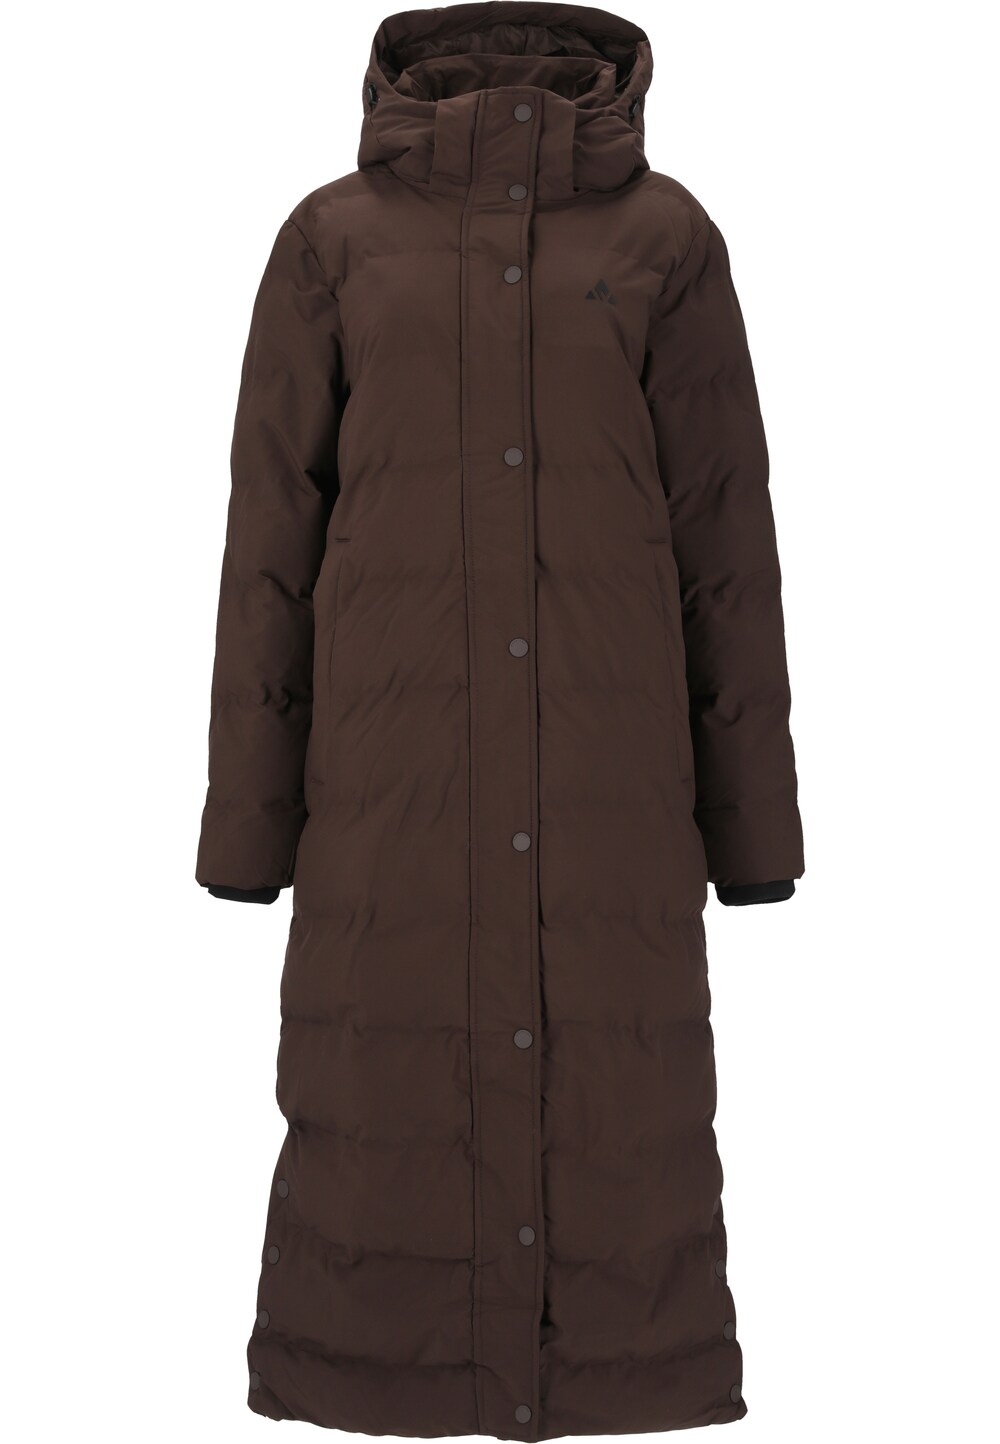 Зимнее пальто Whistler JOANA, темно коричневый